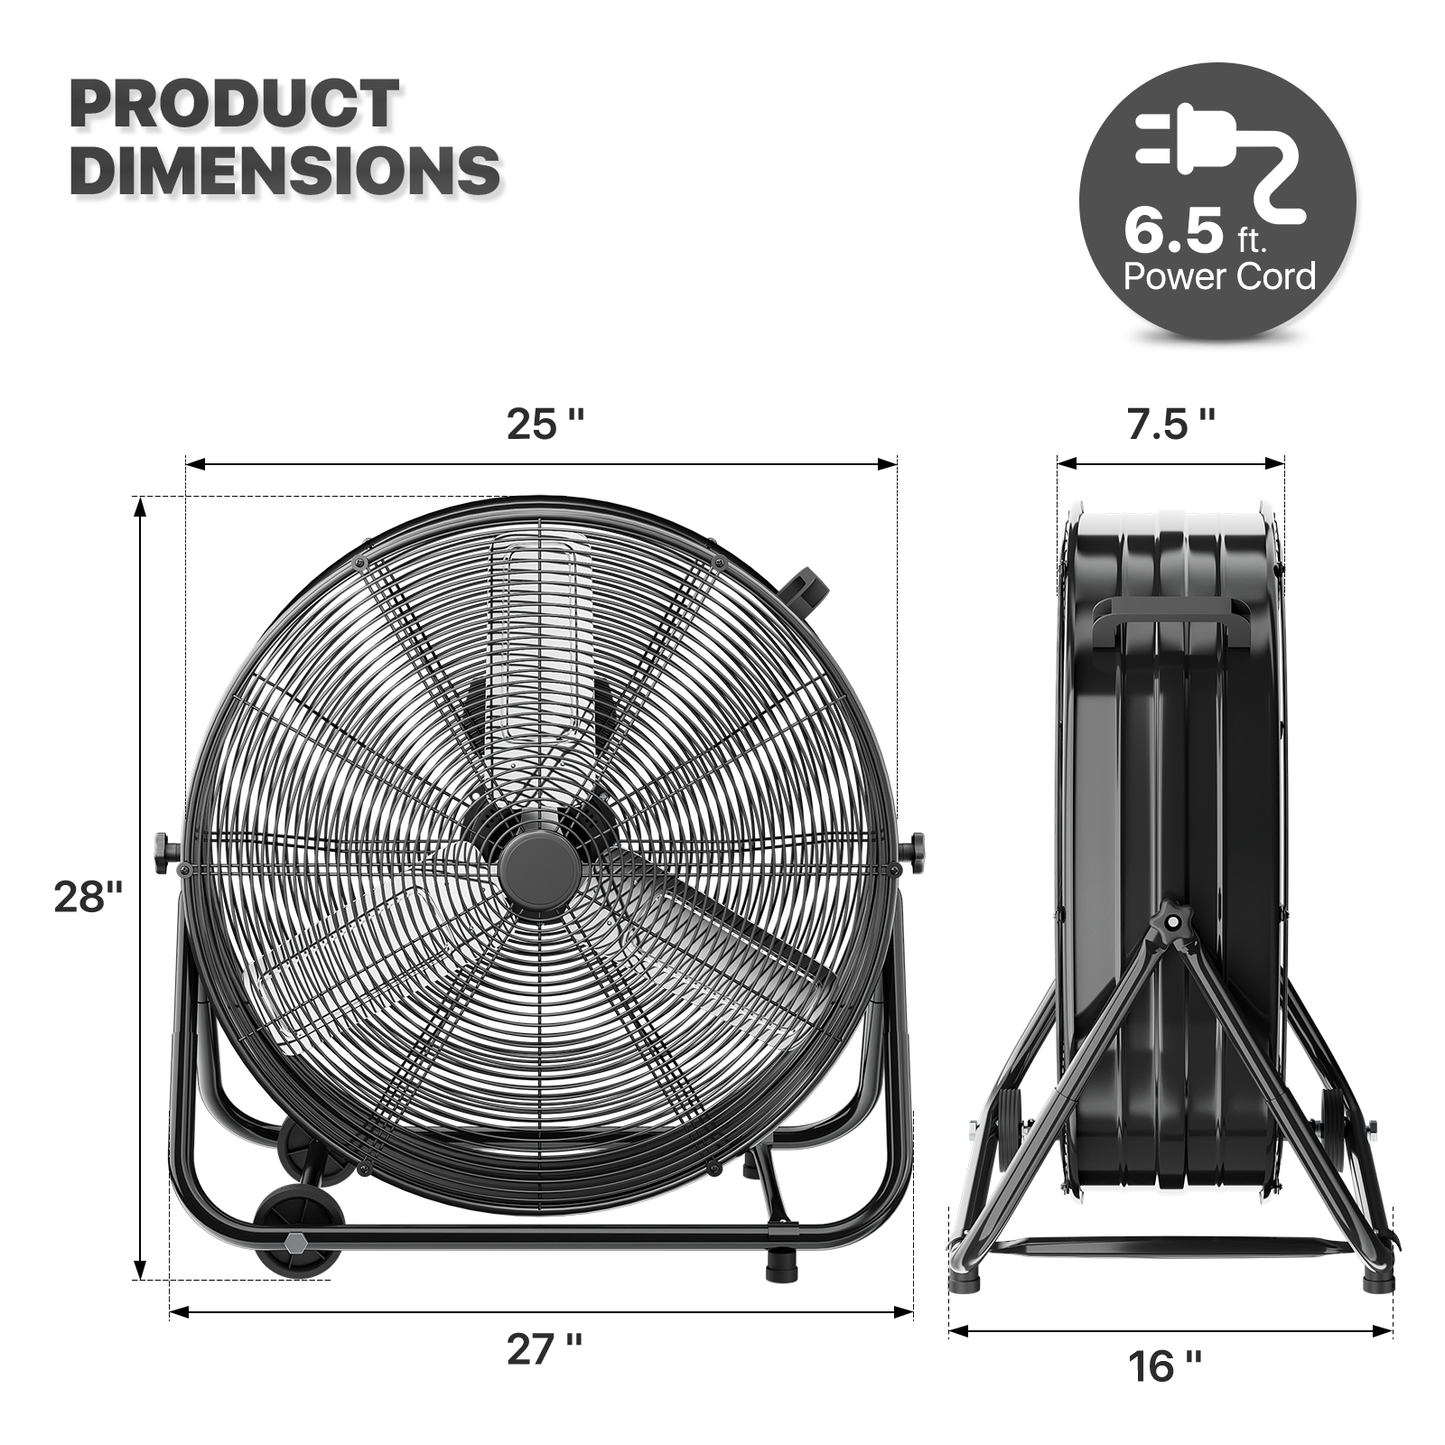 20" Floor Fan - 3 Speeds - Adjustable Tilt